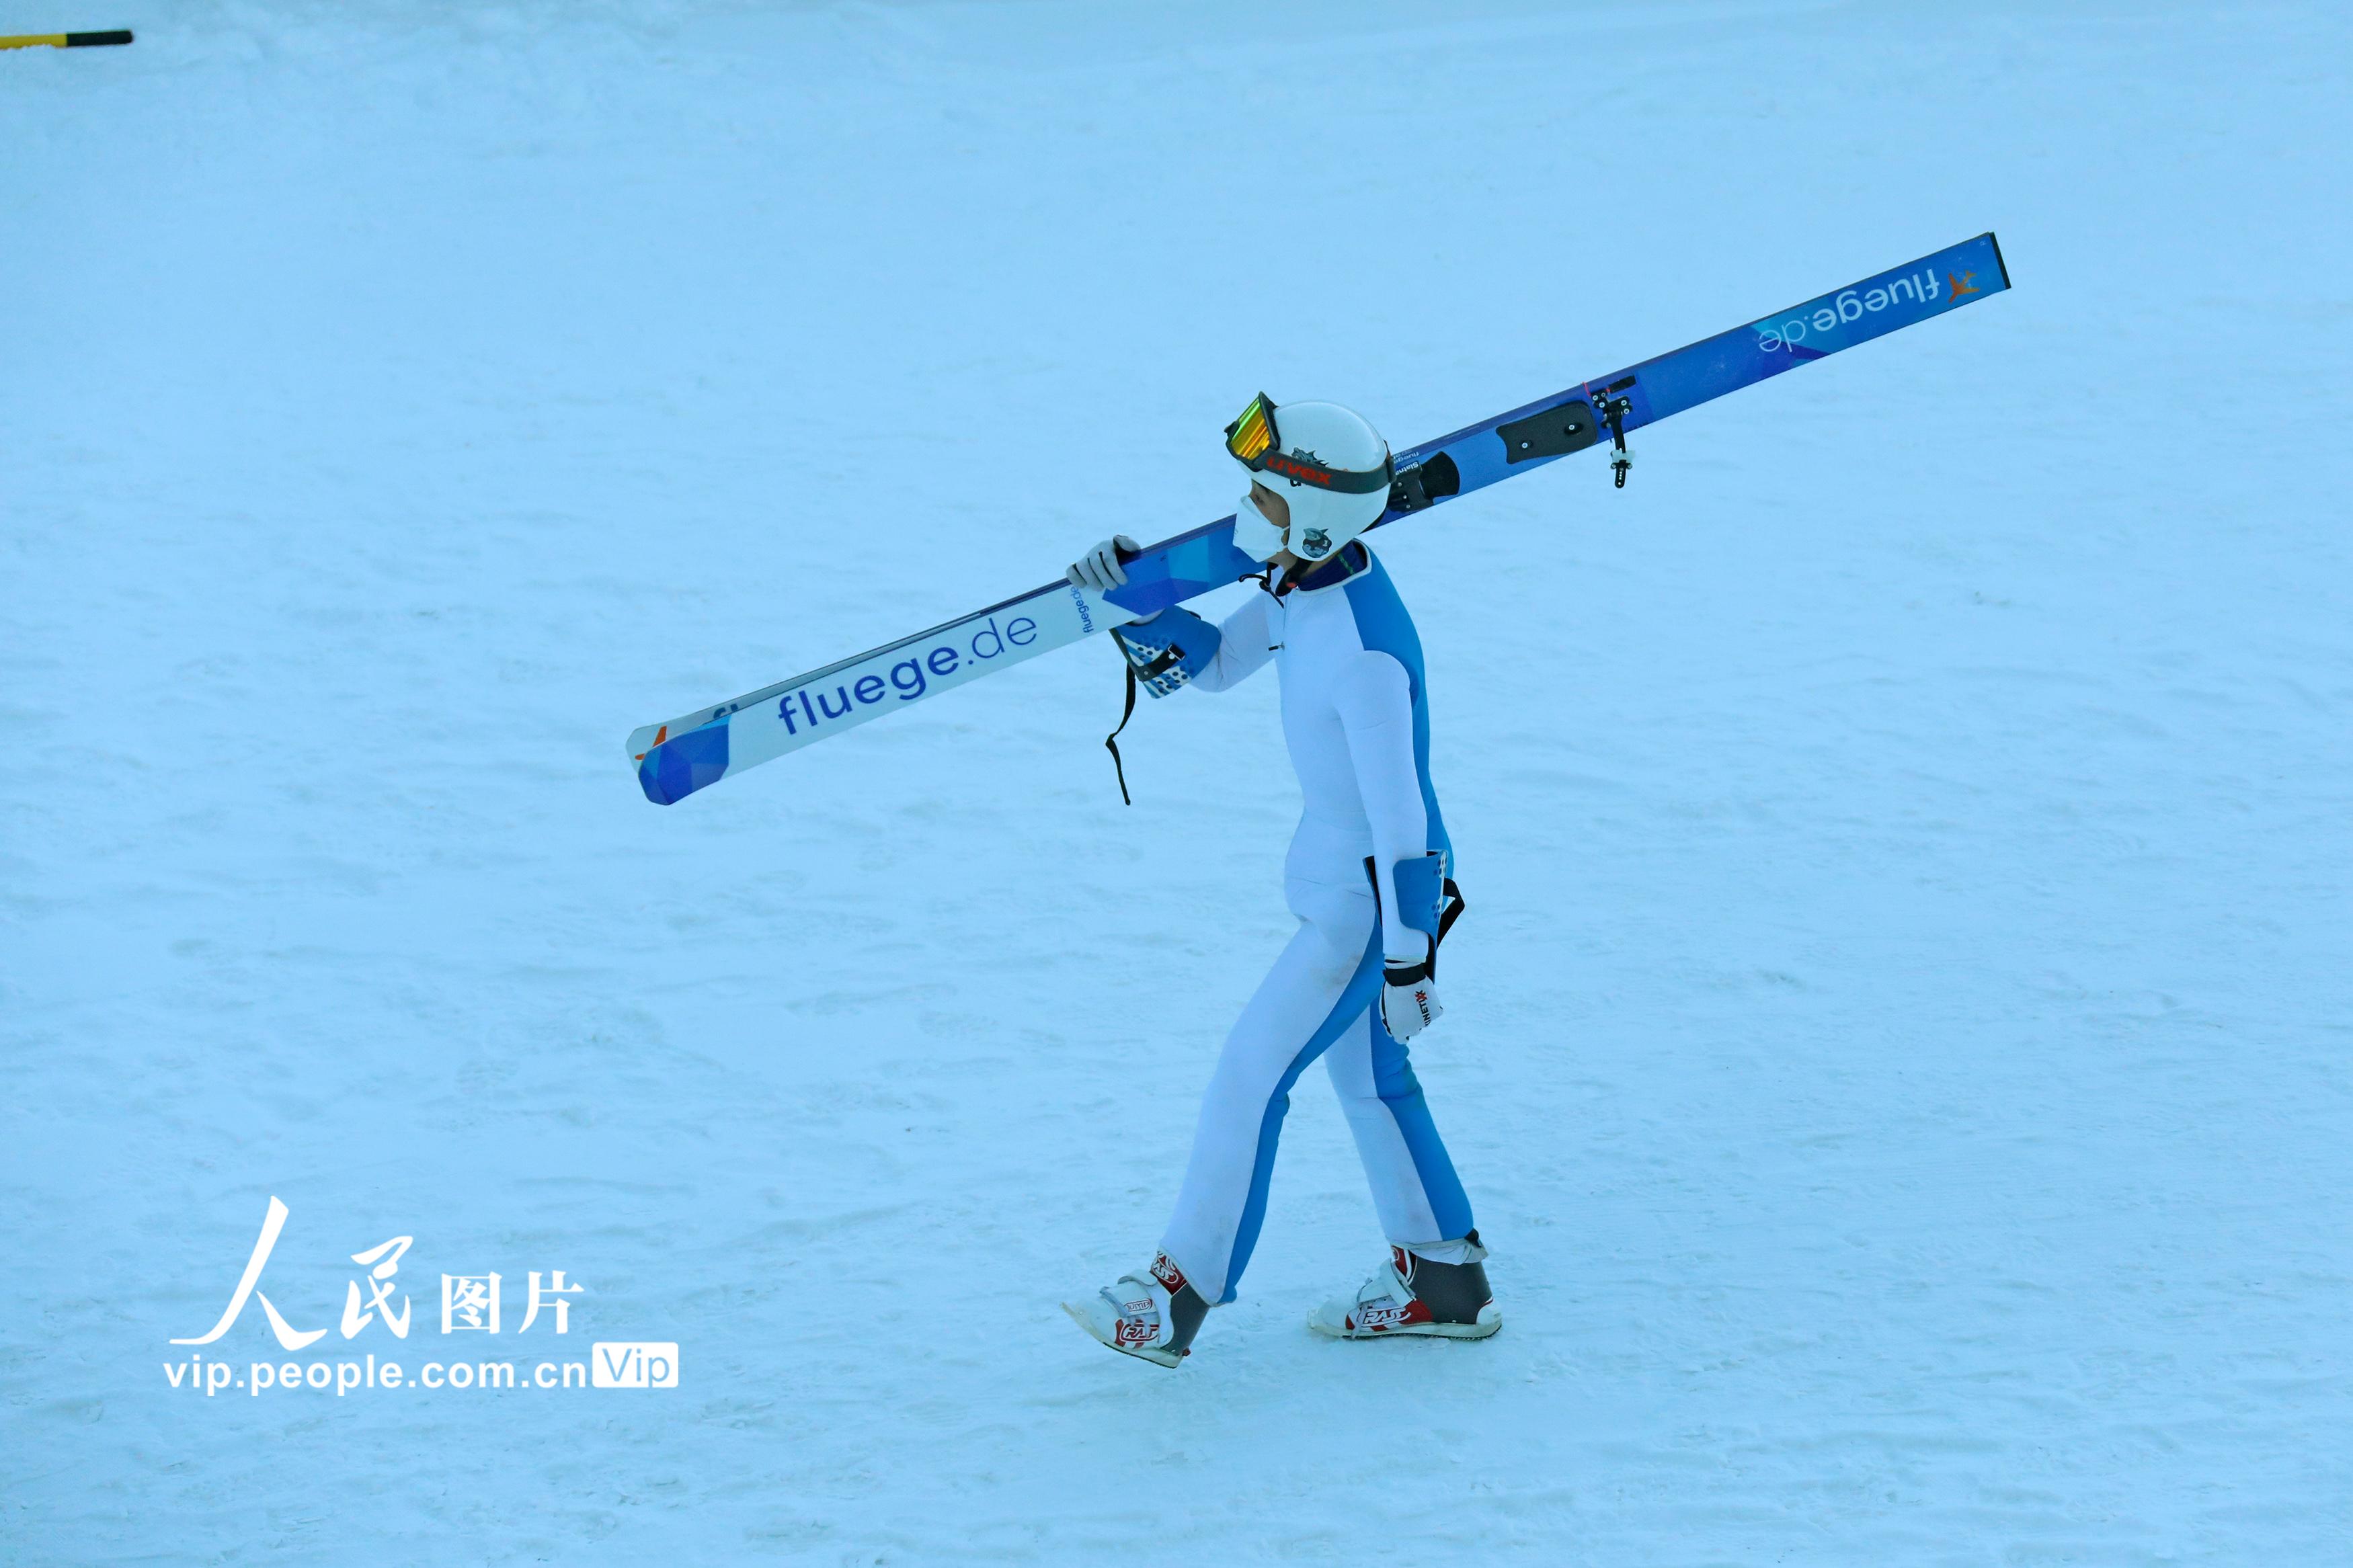 北京2022年冬奧會張家口賽區國家跳台滑雪中心迎來首日試滑【6】